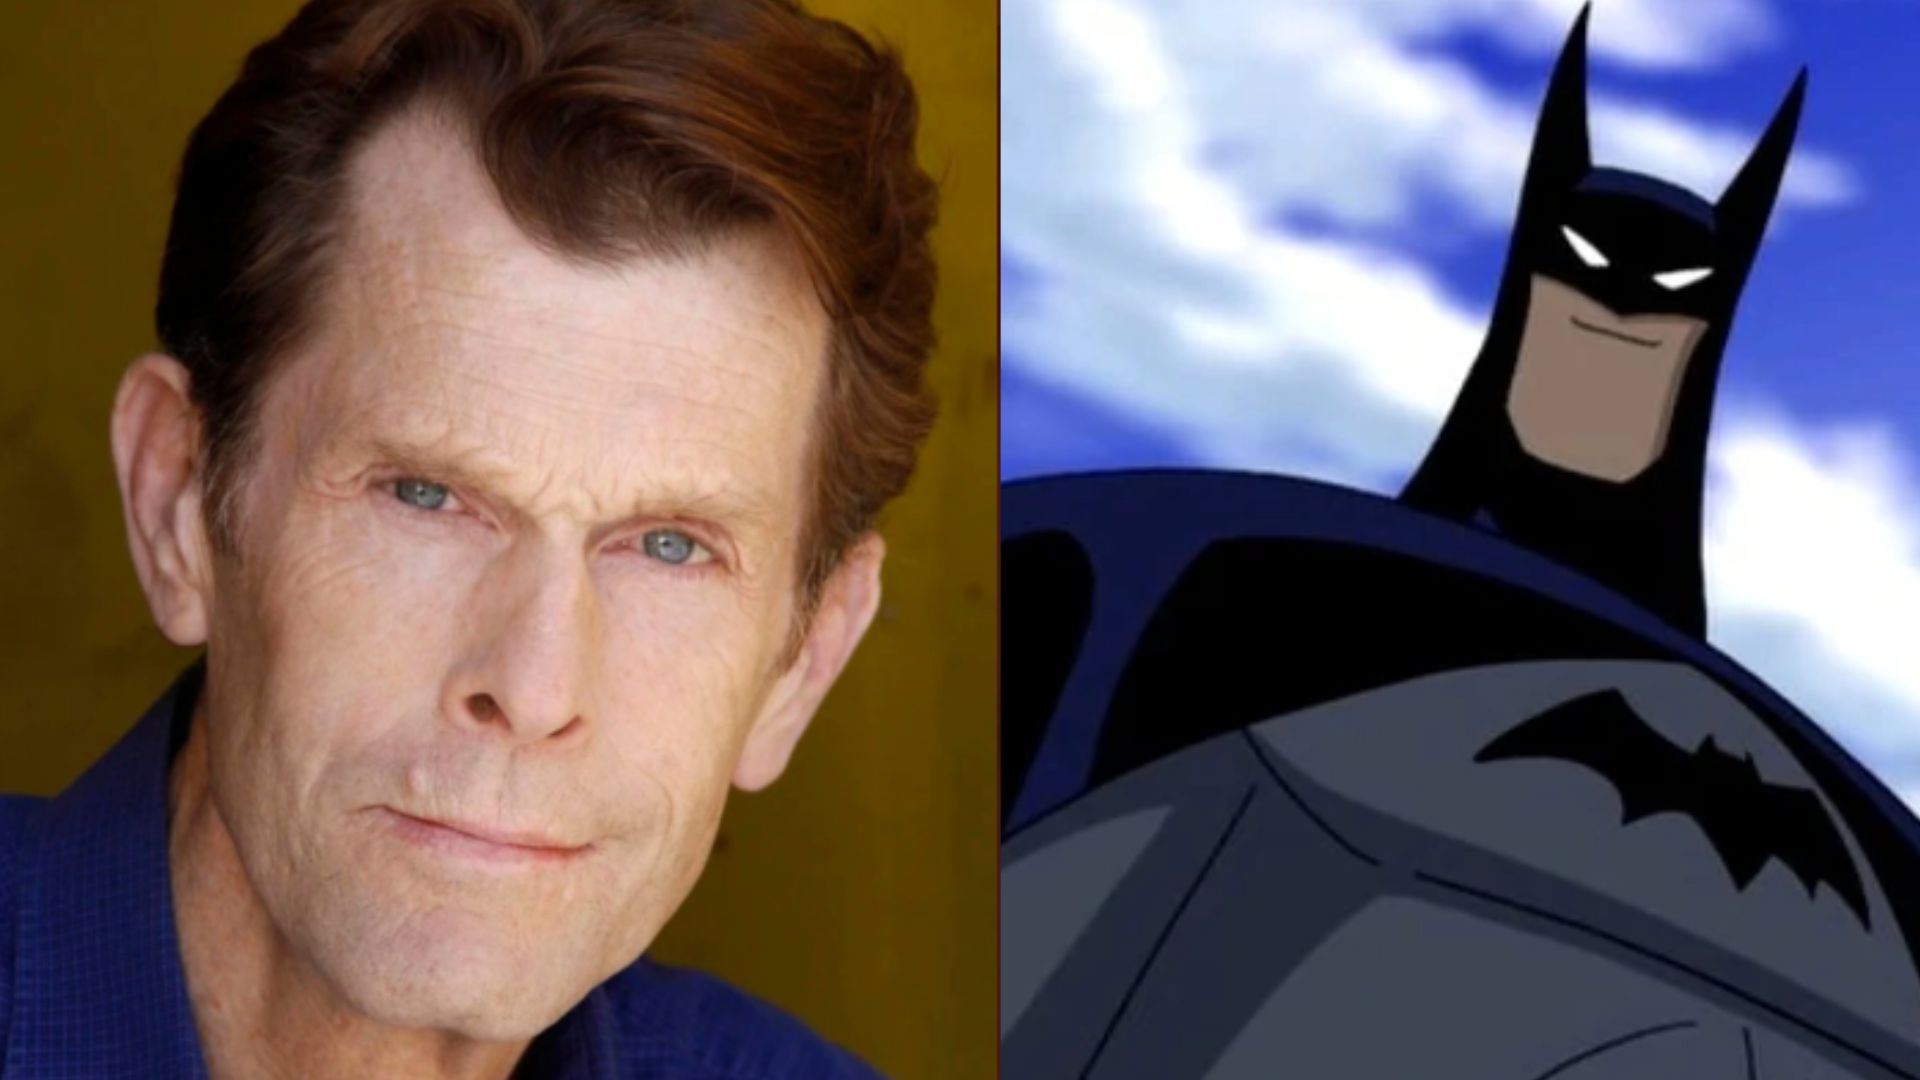 Dublador oficial do Batman há 30 anos, Kevin Conroy morre aos 66 anos -  Folha PE